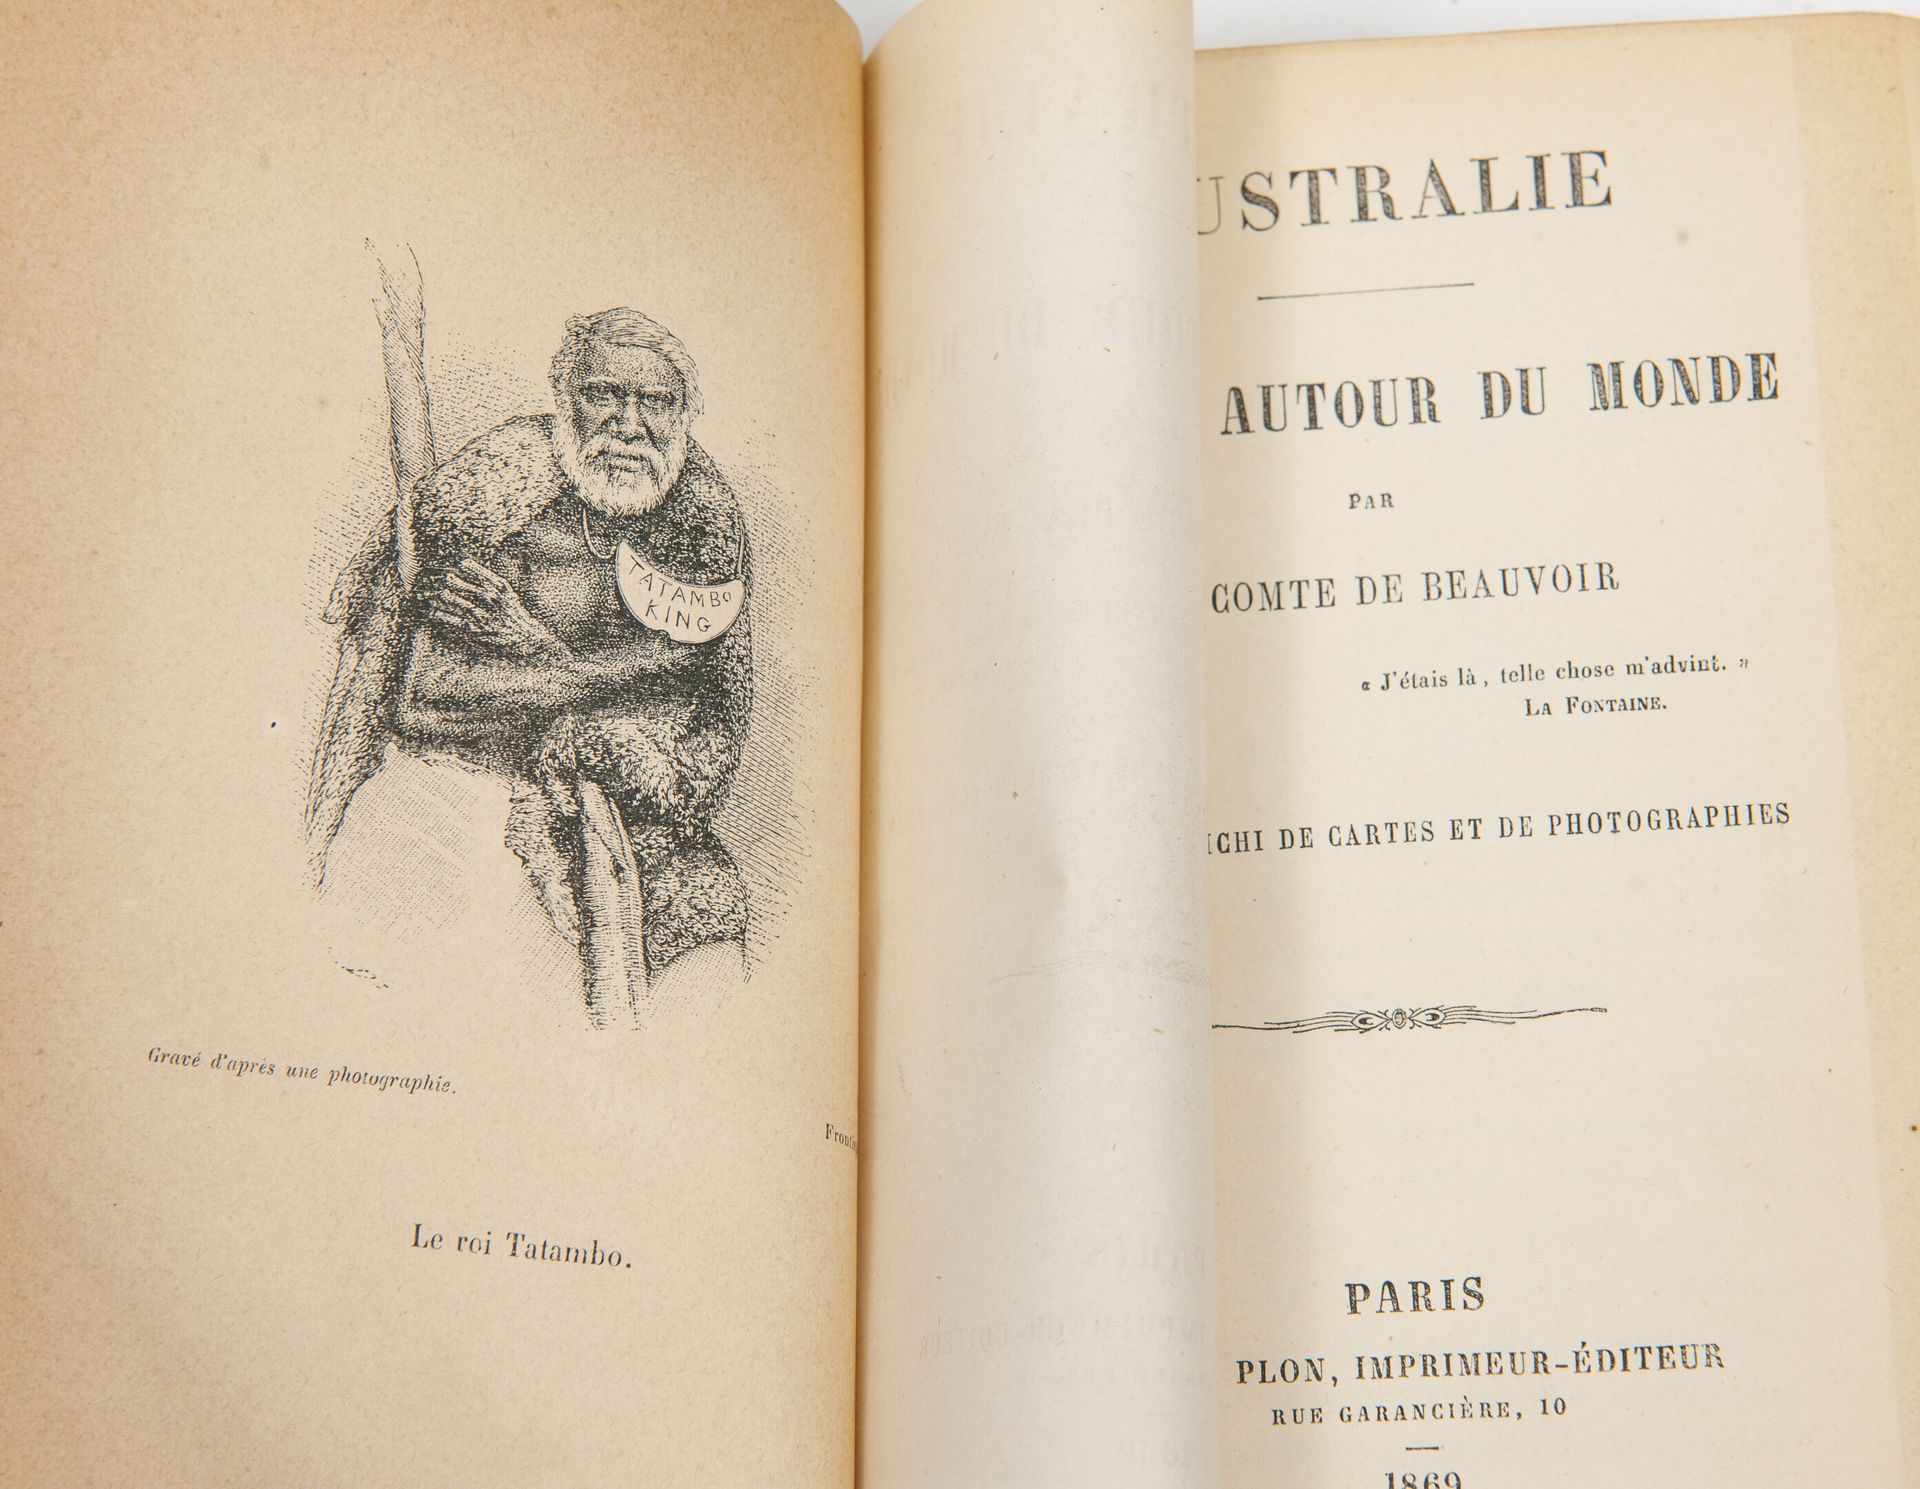 BEAUVOIR (Ludovic, Cte de) Voyages autour du monde.

Paris, Plon, 1869-1872, 3 B&hellip;